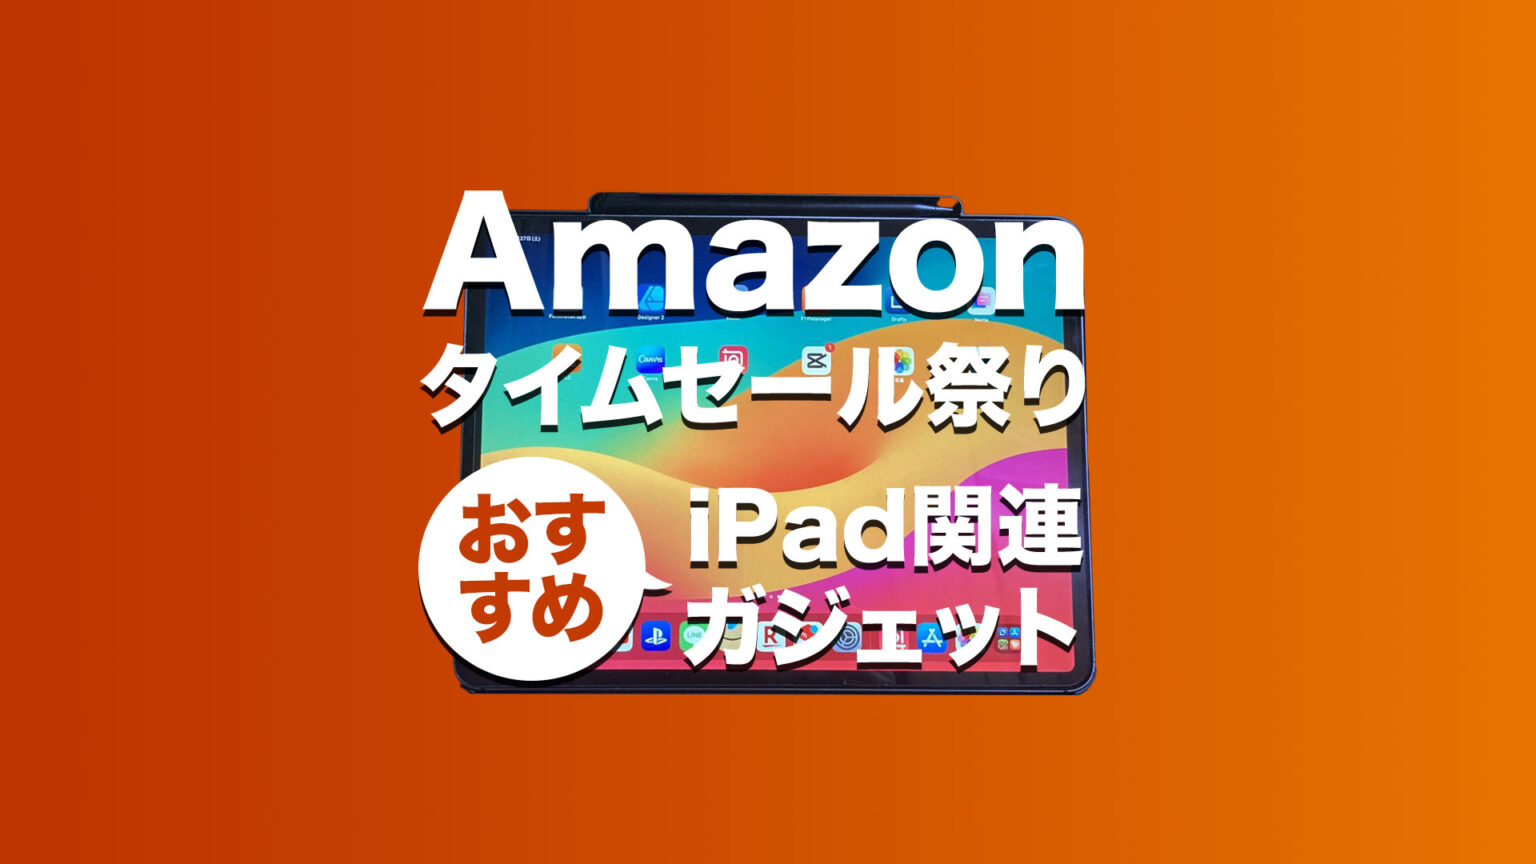 Amazon タイムセール祭り おすすめ iPadガジェット